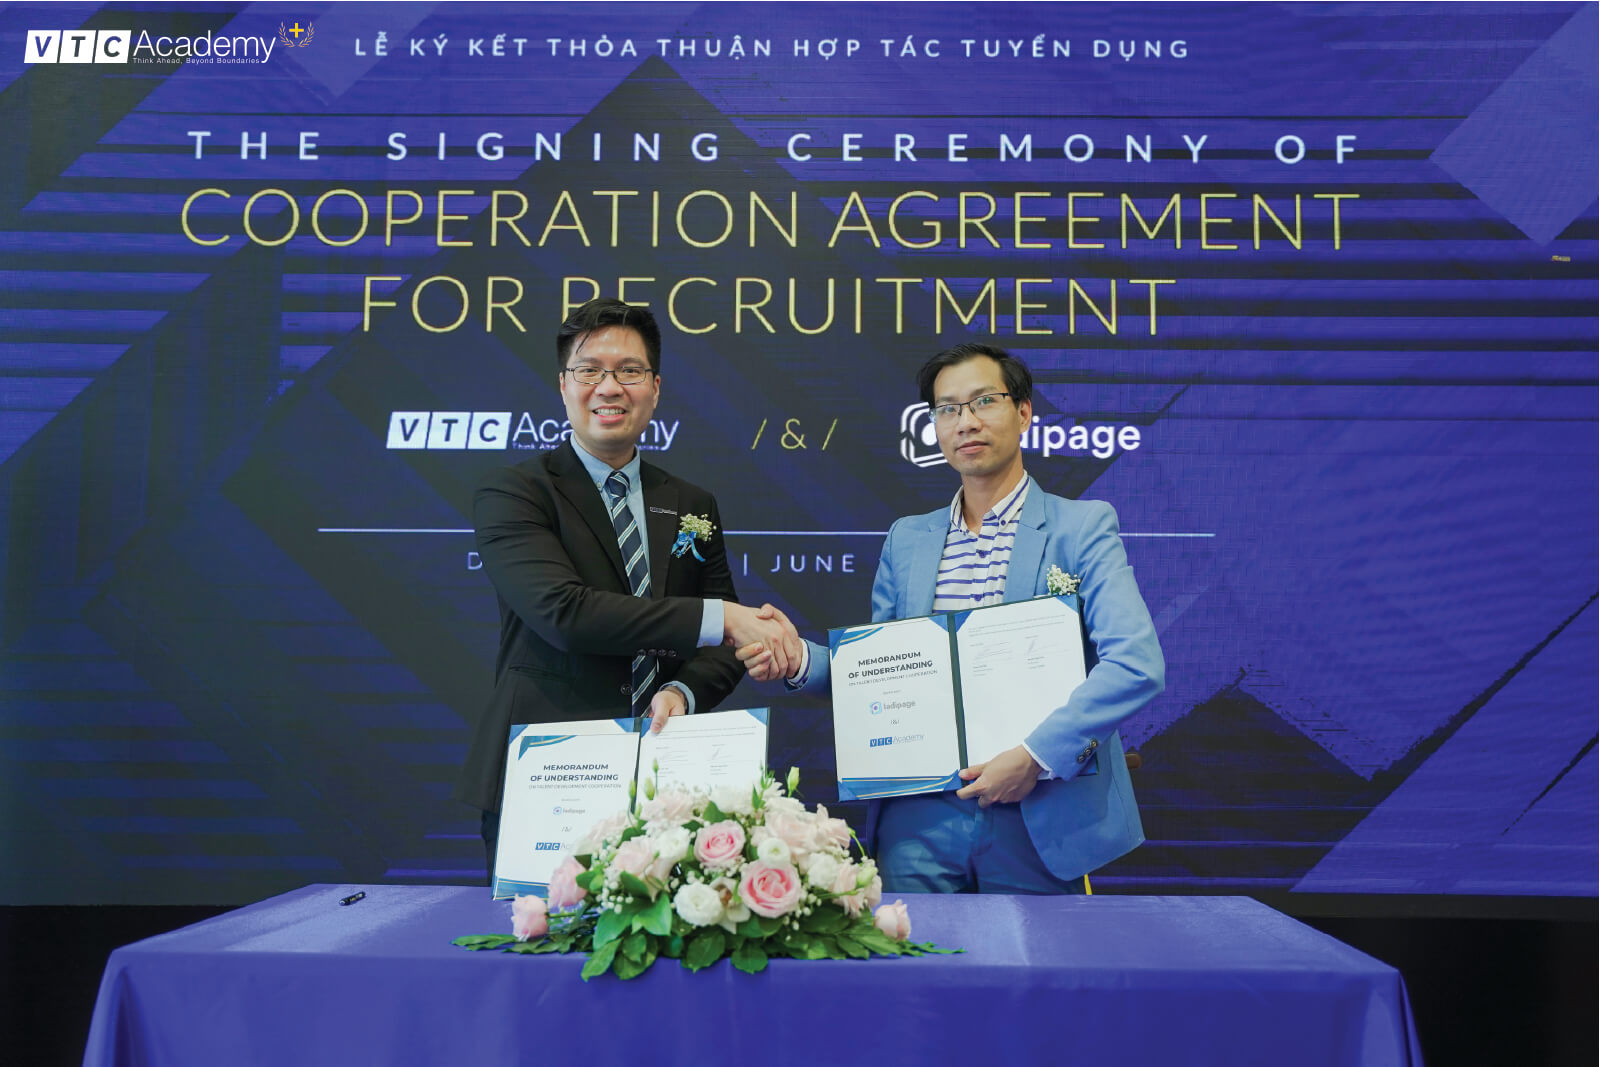 VTC Academy ký kết hợp tác tuyển dụng với Công ty Cổ phần Công nghệ LadiPage Việt Nam